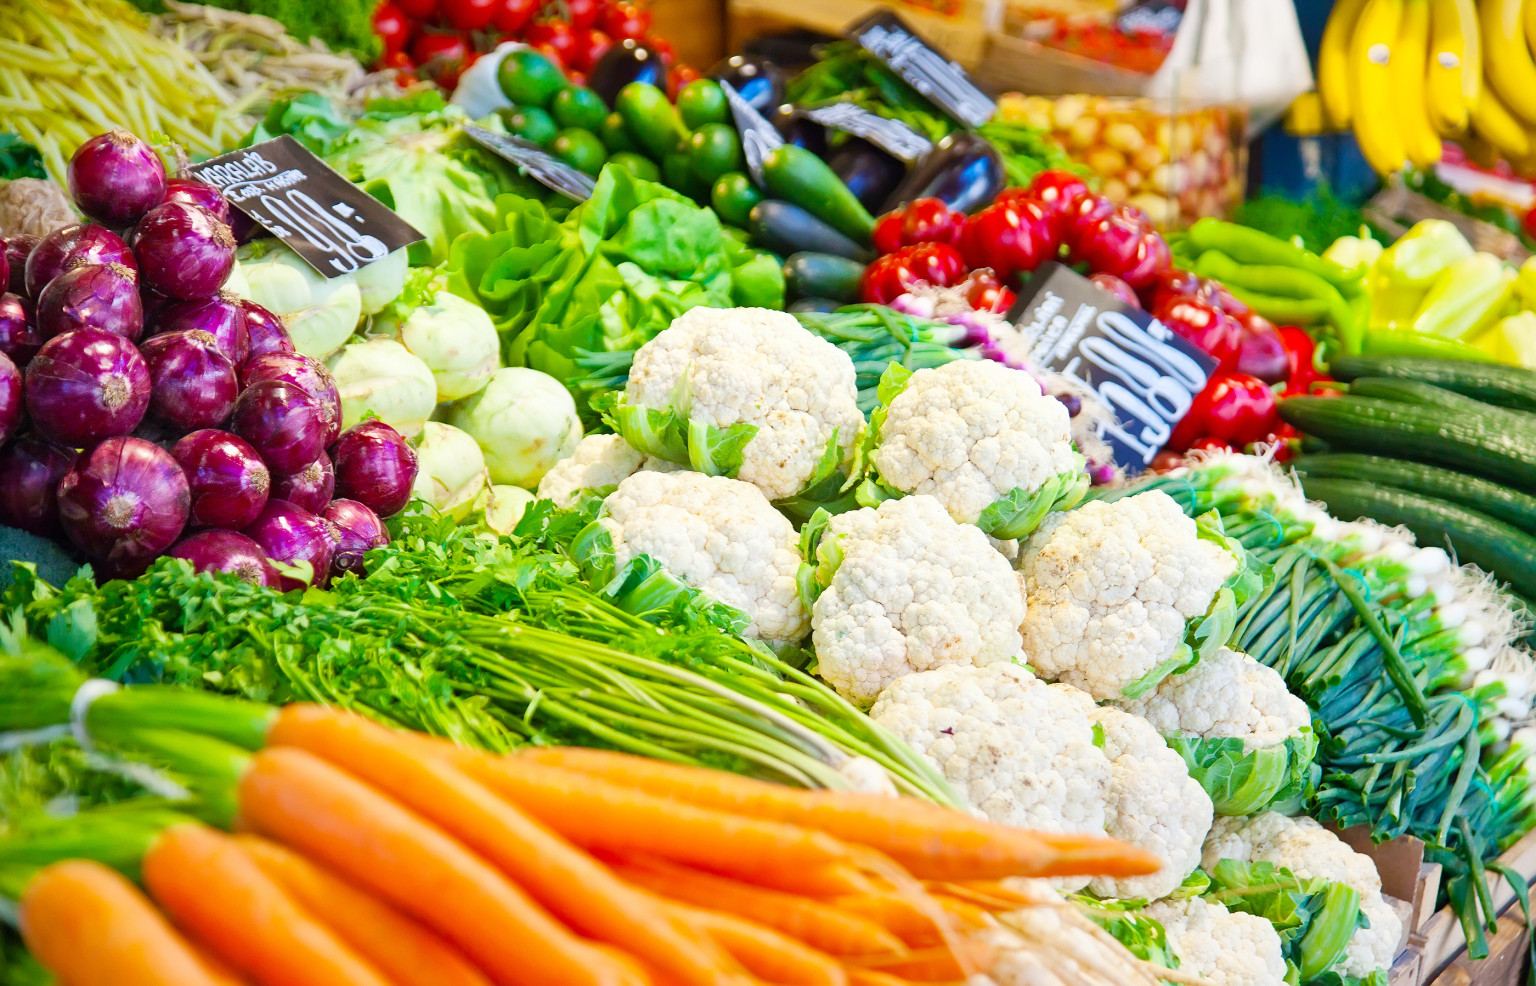 Ограничение на ввоз овощей из Азербайджана негативно скажется на красноярском продуктовом рынке – маркетолог